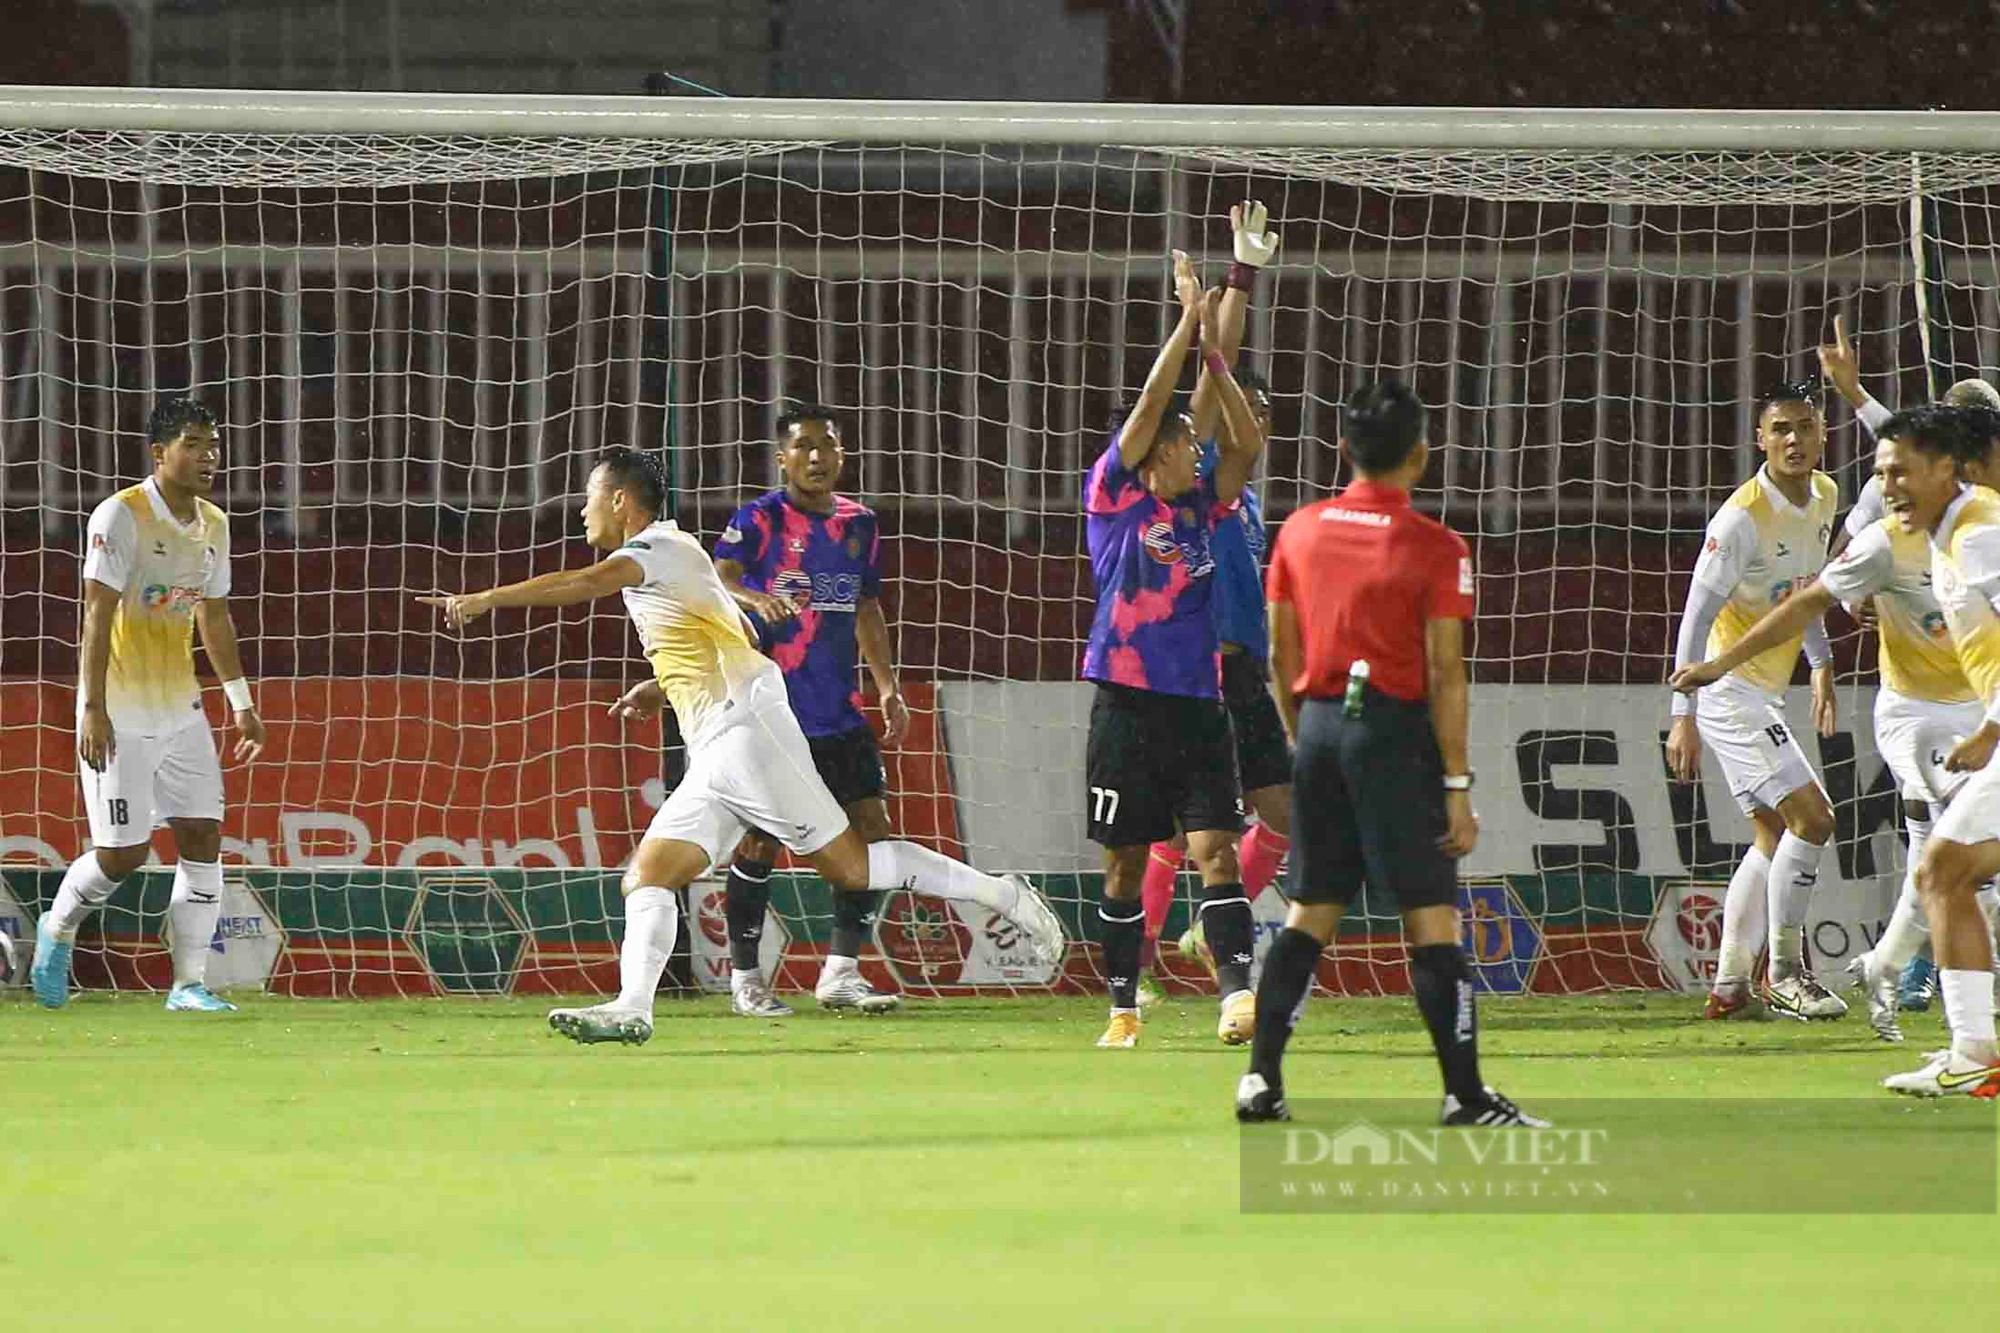 Dứt điểm vô duyên, Sài Gòn FC bỏ lỡ chiến thắng đầu tay - Ảnh 3.